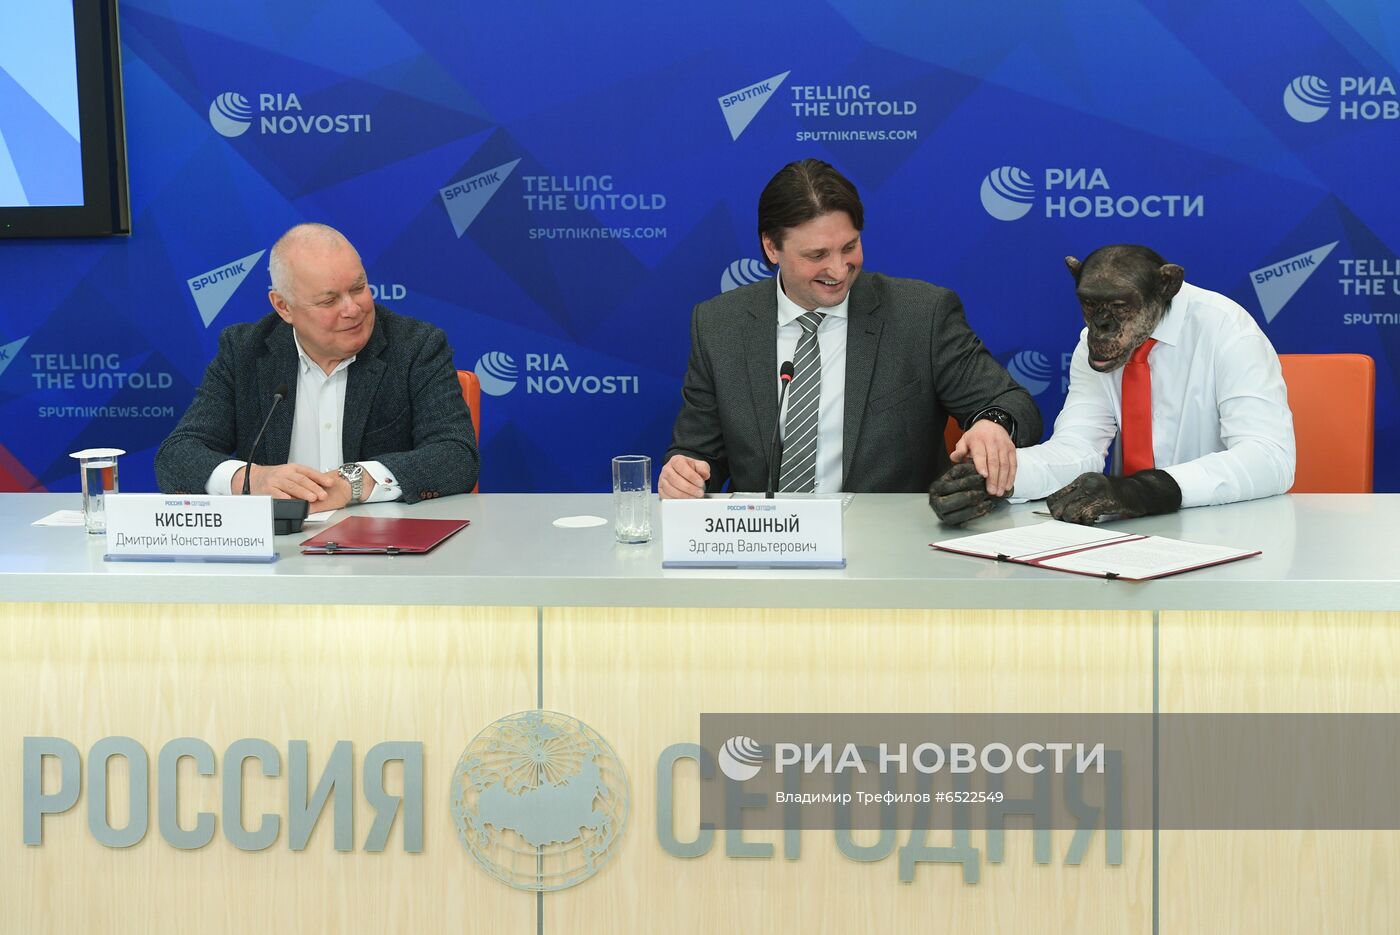 Подписание соглашения о  сотрудничестве между МИА "Россия сегодня", Большим Московским госцирком  и Российской государственной цирковой компанией